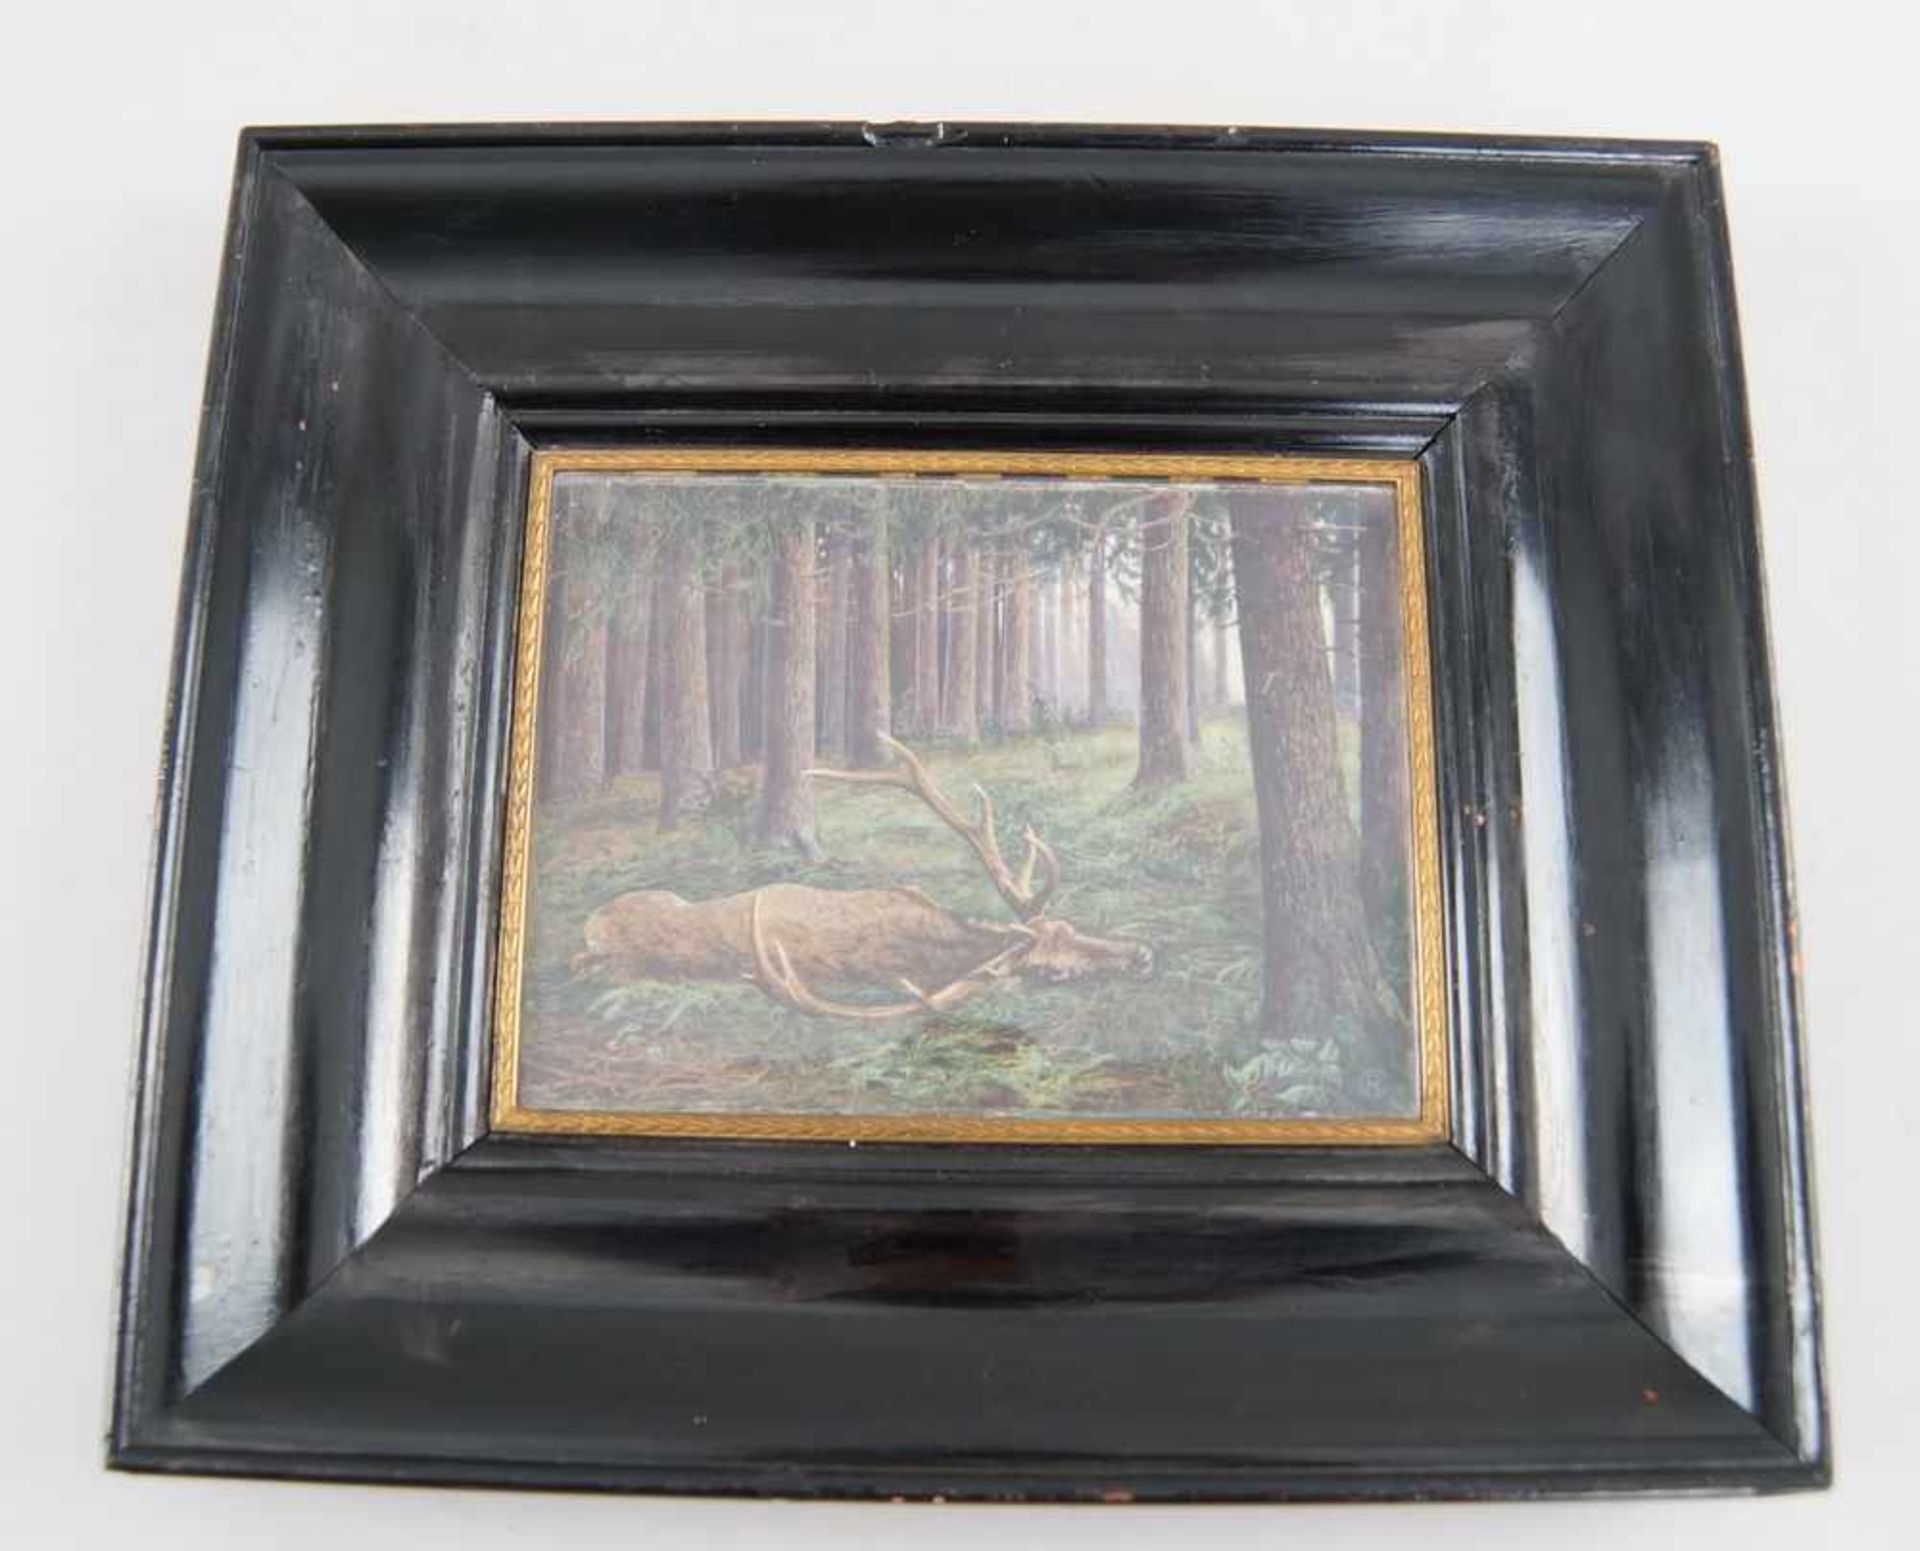 Aquarell auf Elfenbein, erlegter Hirsch im Wald, verso bezeichnet, gerahmt, 28x25cm- - -24.00 % - Bild 2 aus 3